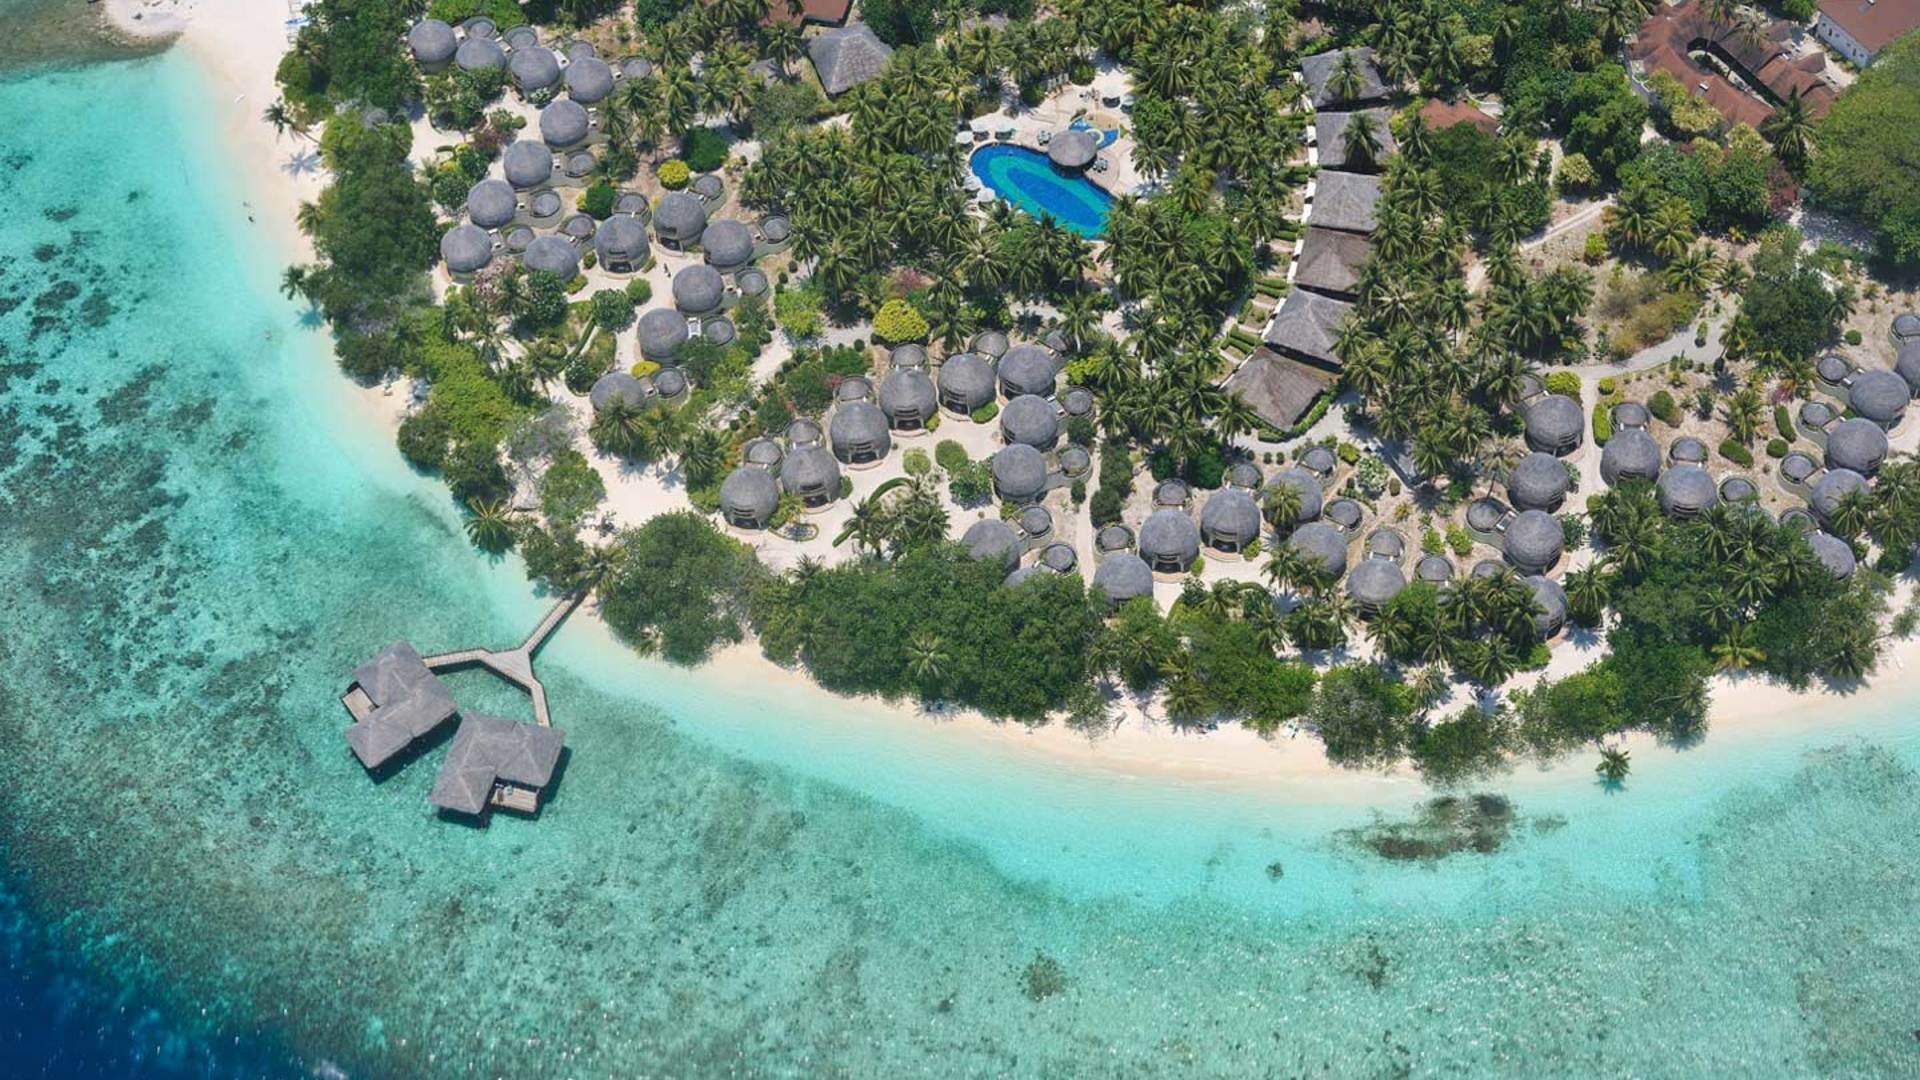 Bandos island resort 4. Остров Bandos Мальдивы. Отель Bandos Island Resort & Spa 4*. Мальдивы Бандос Bandos Island Resort. Отель Bandos Maldives 4.